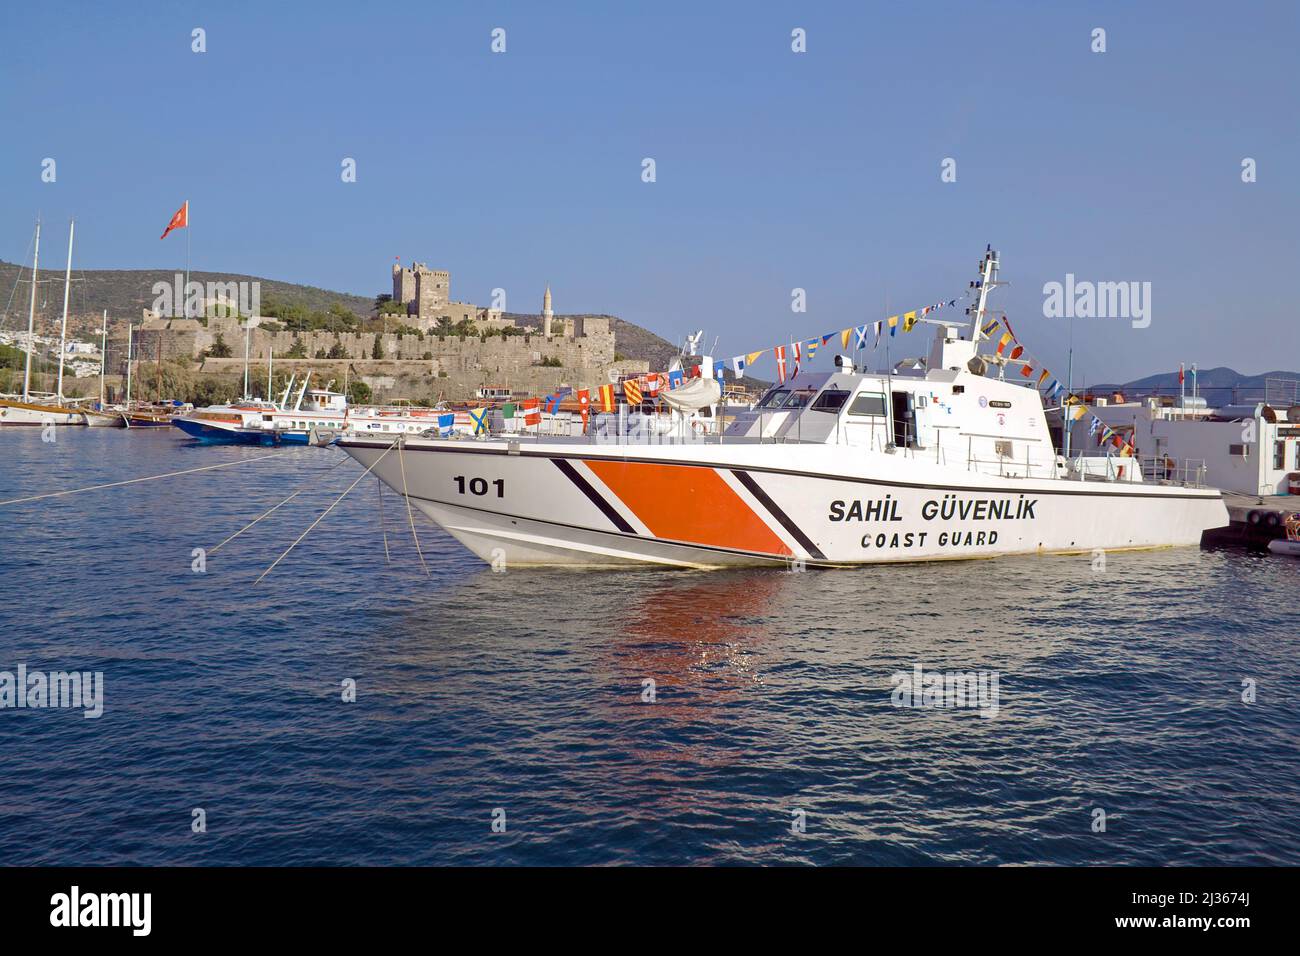 La nave della Guardia Costiera al porto, il castello di Bodrum o il castello di San Pietro, sito patrimonio dell'umanità dell'UNESCO e punto di riferimento di Bodrum, Turchia, Mar Mediterraneo Foto Stock